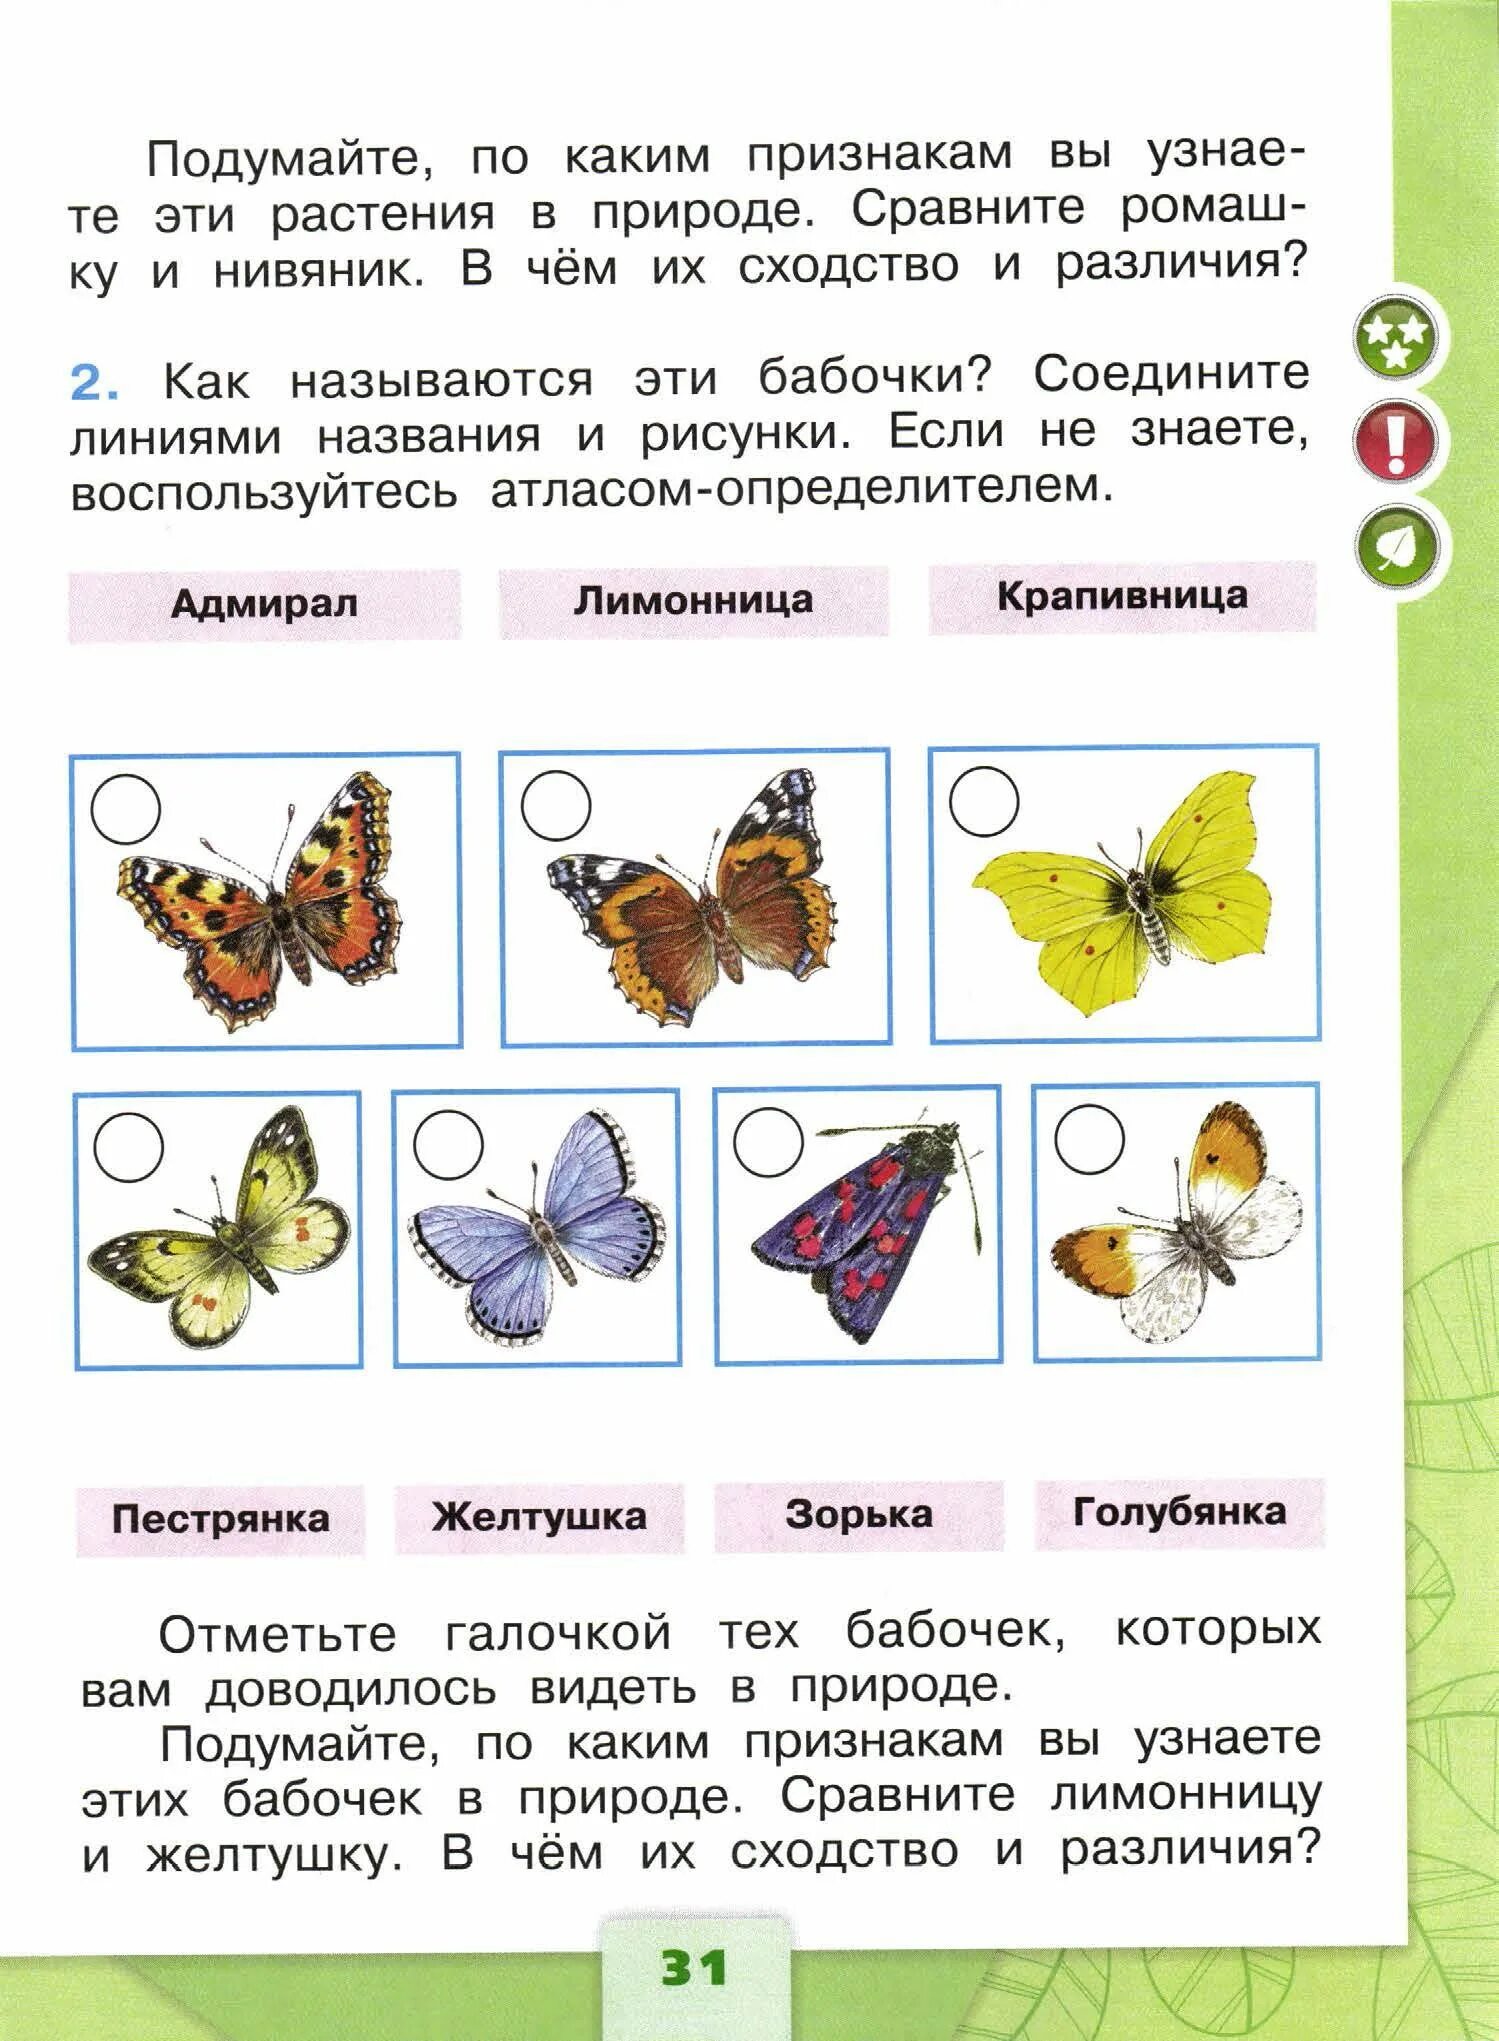 Бабочки по окружающему миру 1 класс 2 часть ответы Плешаков. Плешаков окружающий мир 1 класс бабочки и их названия. Бабочки окружающий мир 1 класс рабочая тетрадь. Атлас-определитель 1 класс окружающий мир бабочки. В чем сходство и различие бабочек